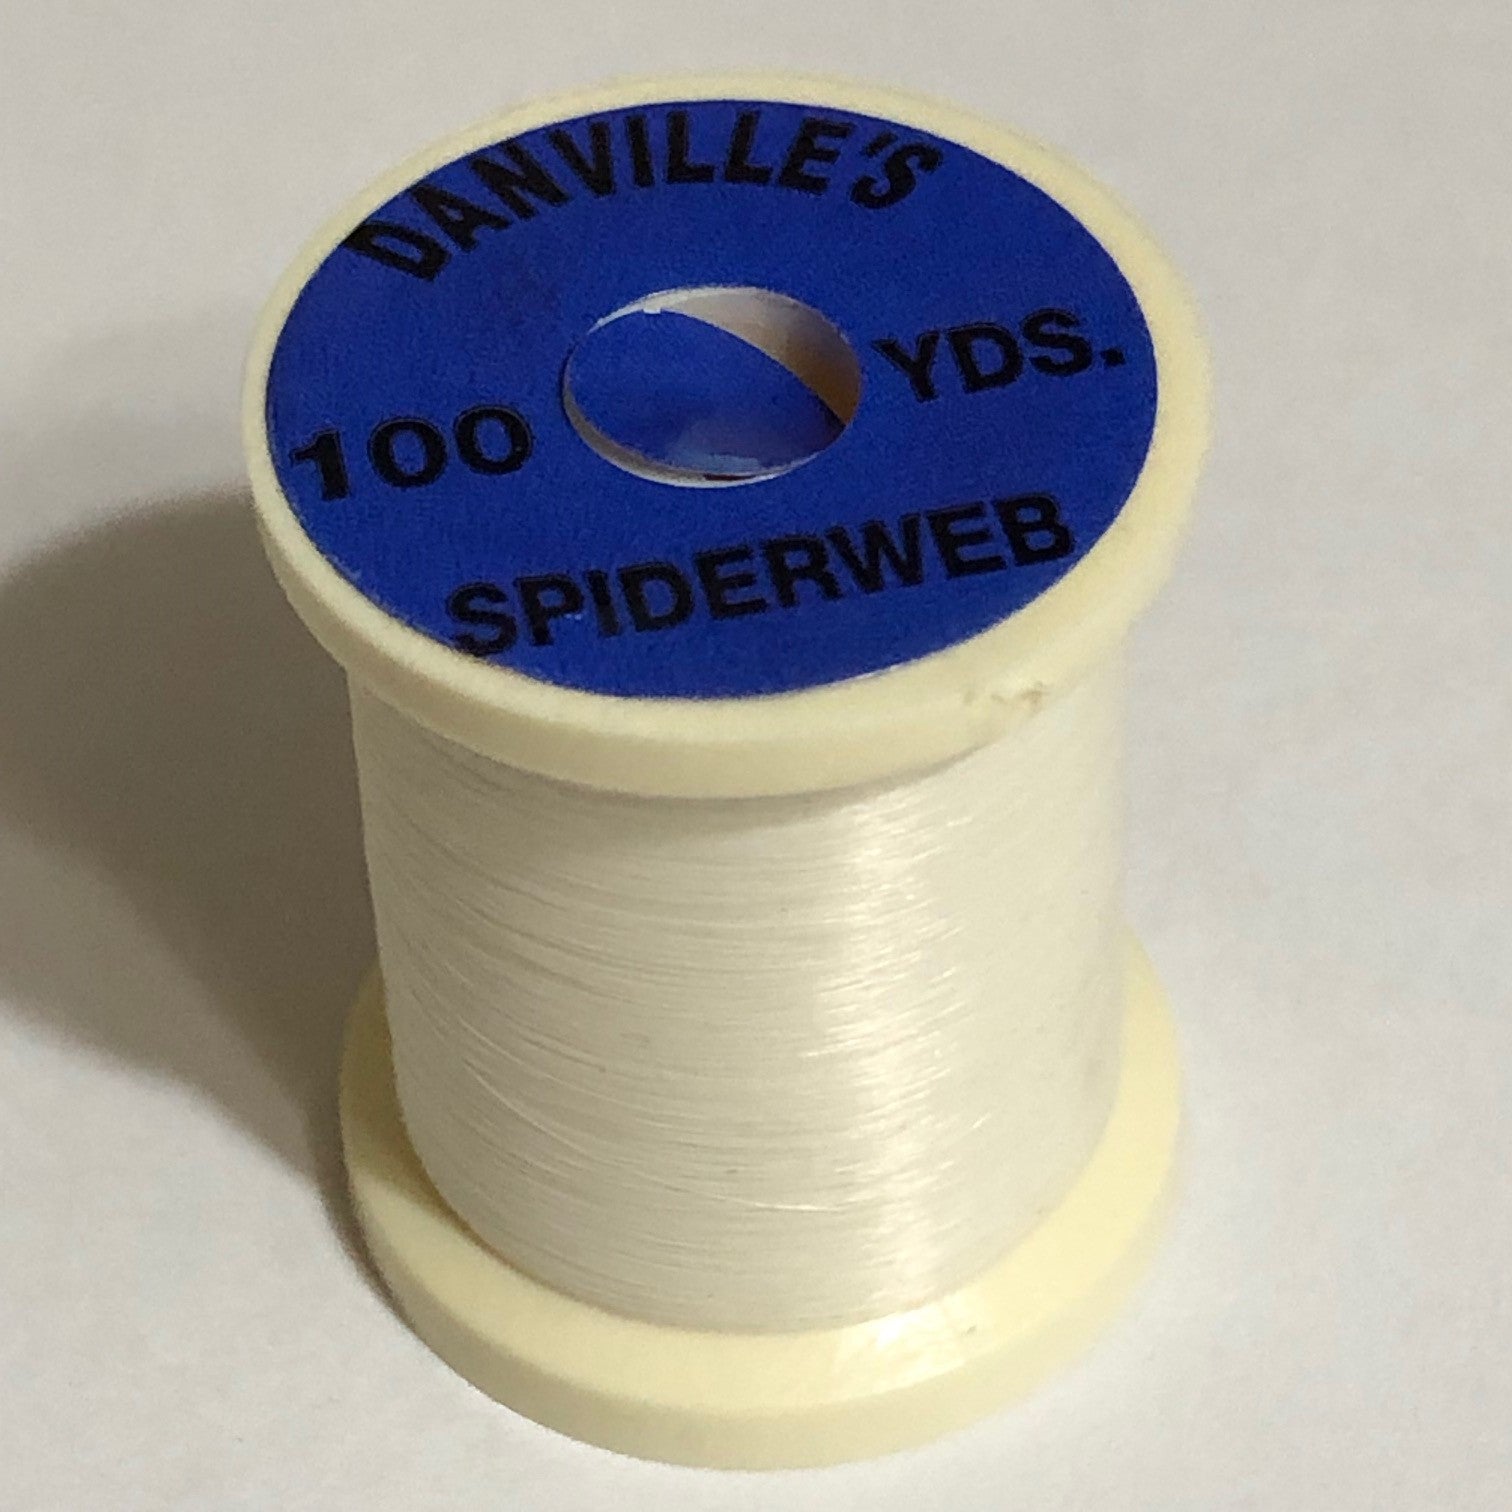 Danville Spiderweb